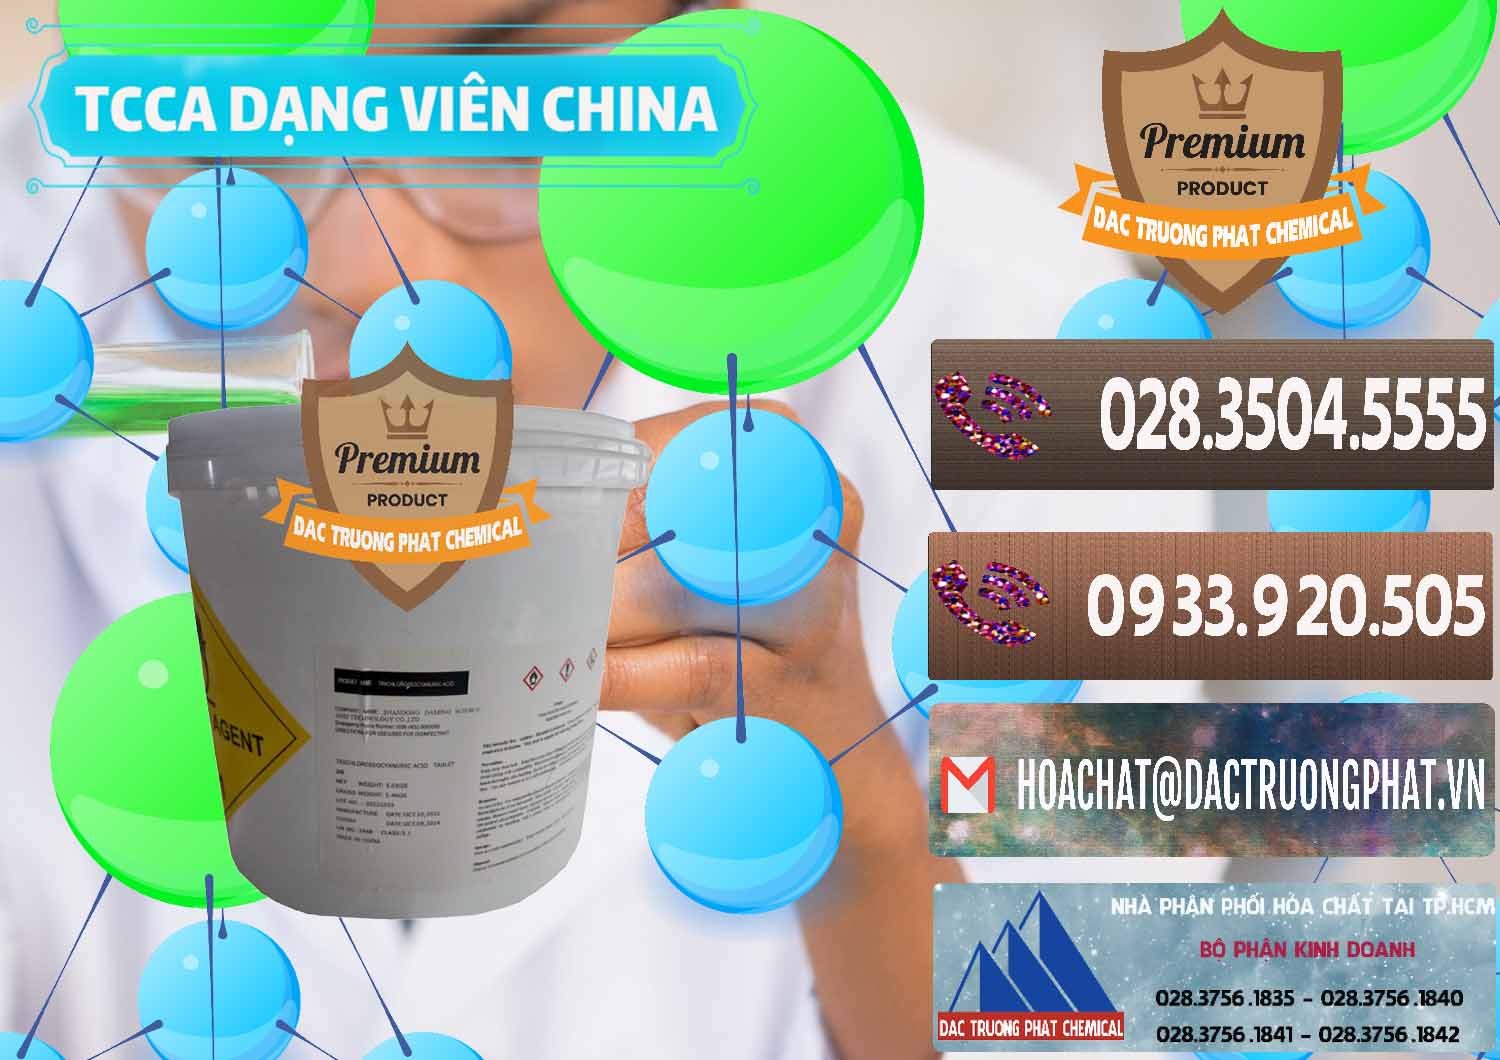 Đơn vị chuyên phân phối - bán TCCA - Acid Trichloroisocyanuric Dạng Viên Thùng 5kg Trung Quốc China - 0379 - Nơi cung cấp và bán hóa chất tại TP.HCM - hoachatviet.net